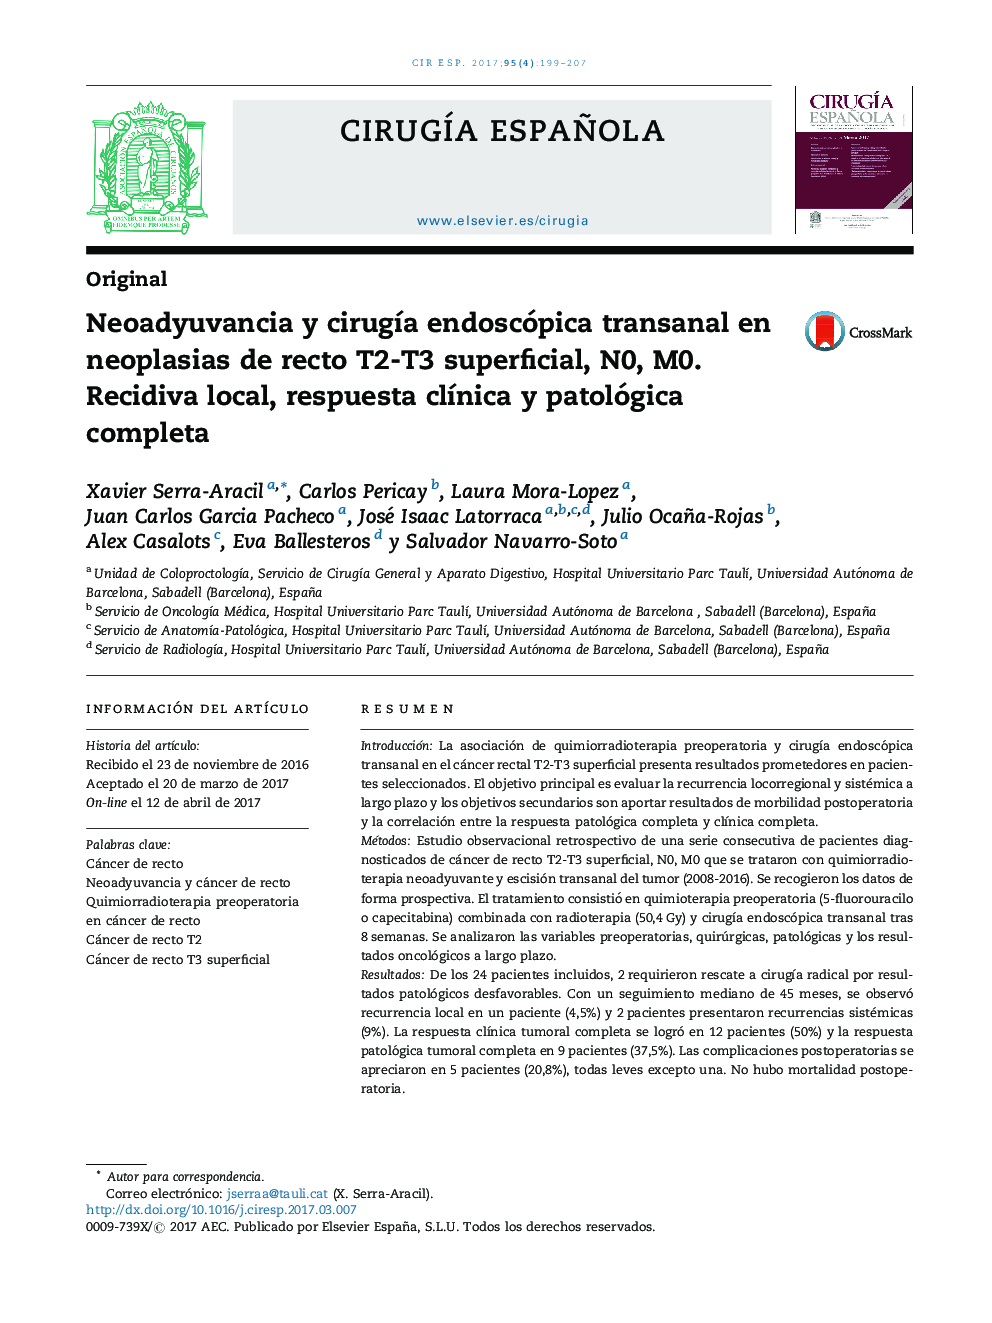 Neoadyuvancia y cirugÃ­a endoscópica transanal en neoplasias de recto T2-T3 superficial, N0, M0. Recidiva local, respuesta clÃ­nica y patológica completa